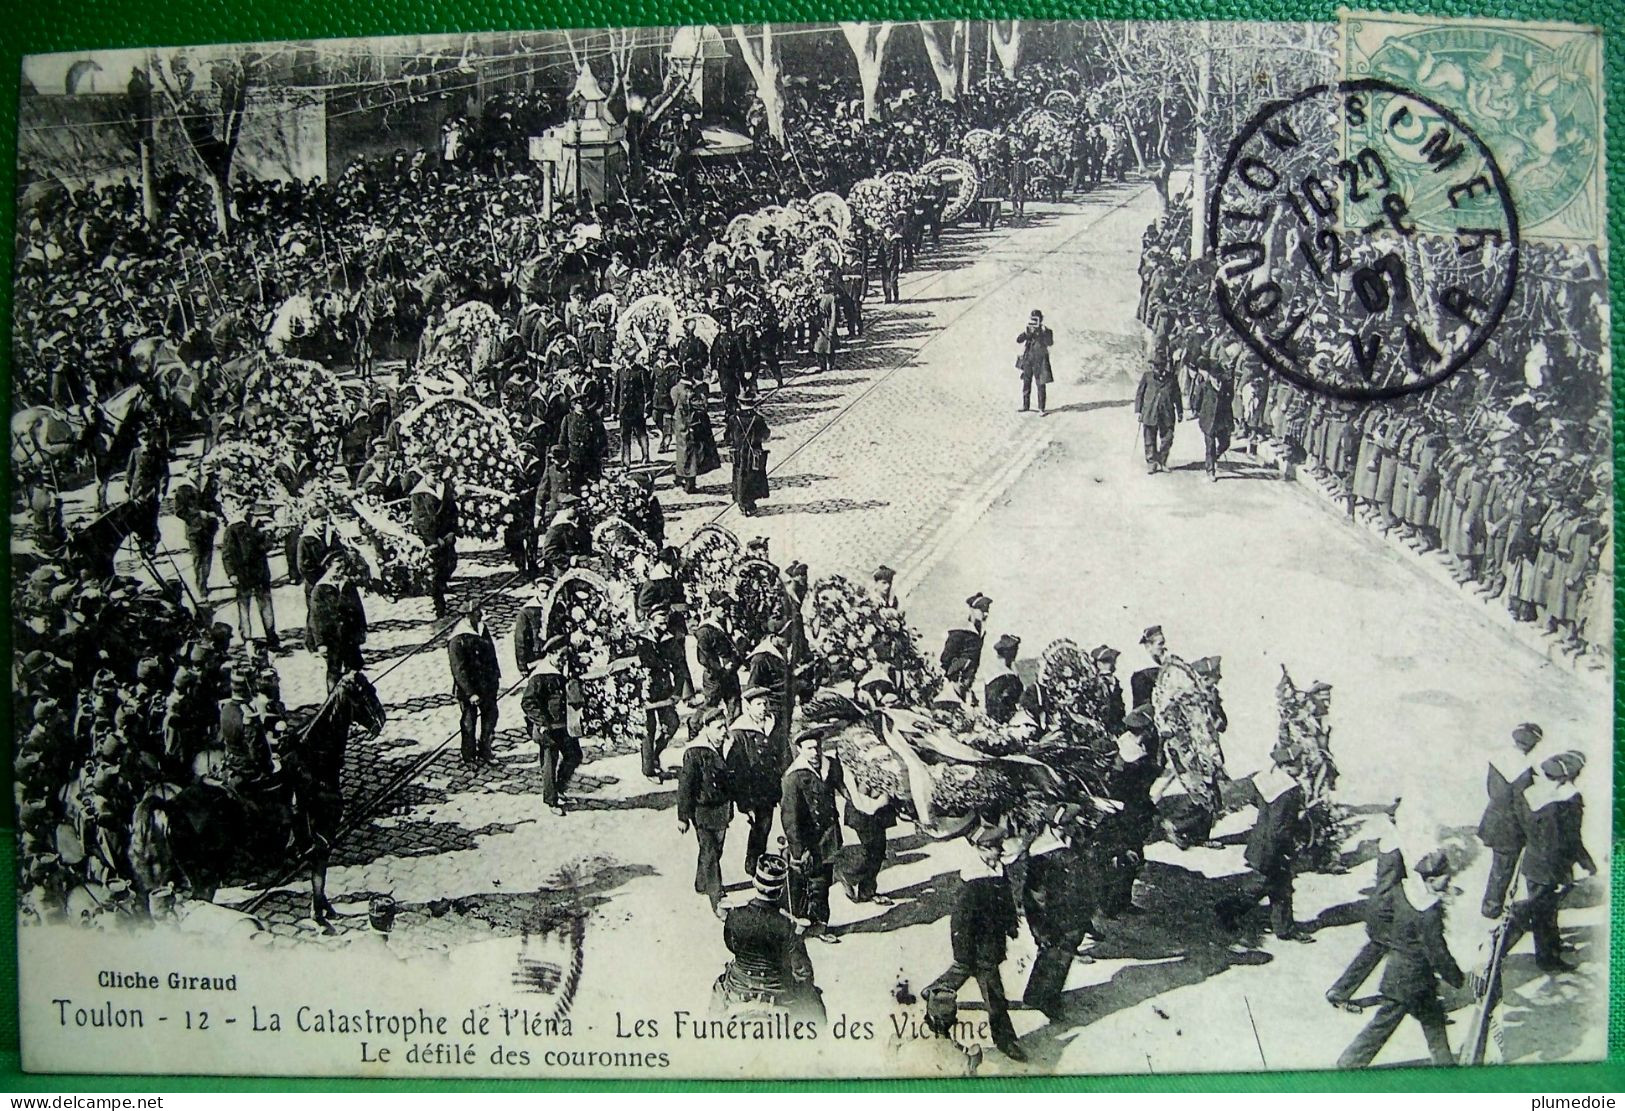 Cpa  EXPLOSION DU CUIRASSE IENA Toulon  FUNERAILLES,  DEFILE DES COURONNES . 1907 MARINS MARINE FRANCAISE  EDIT GIRAUD - Funérailles